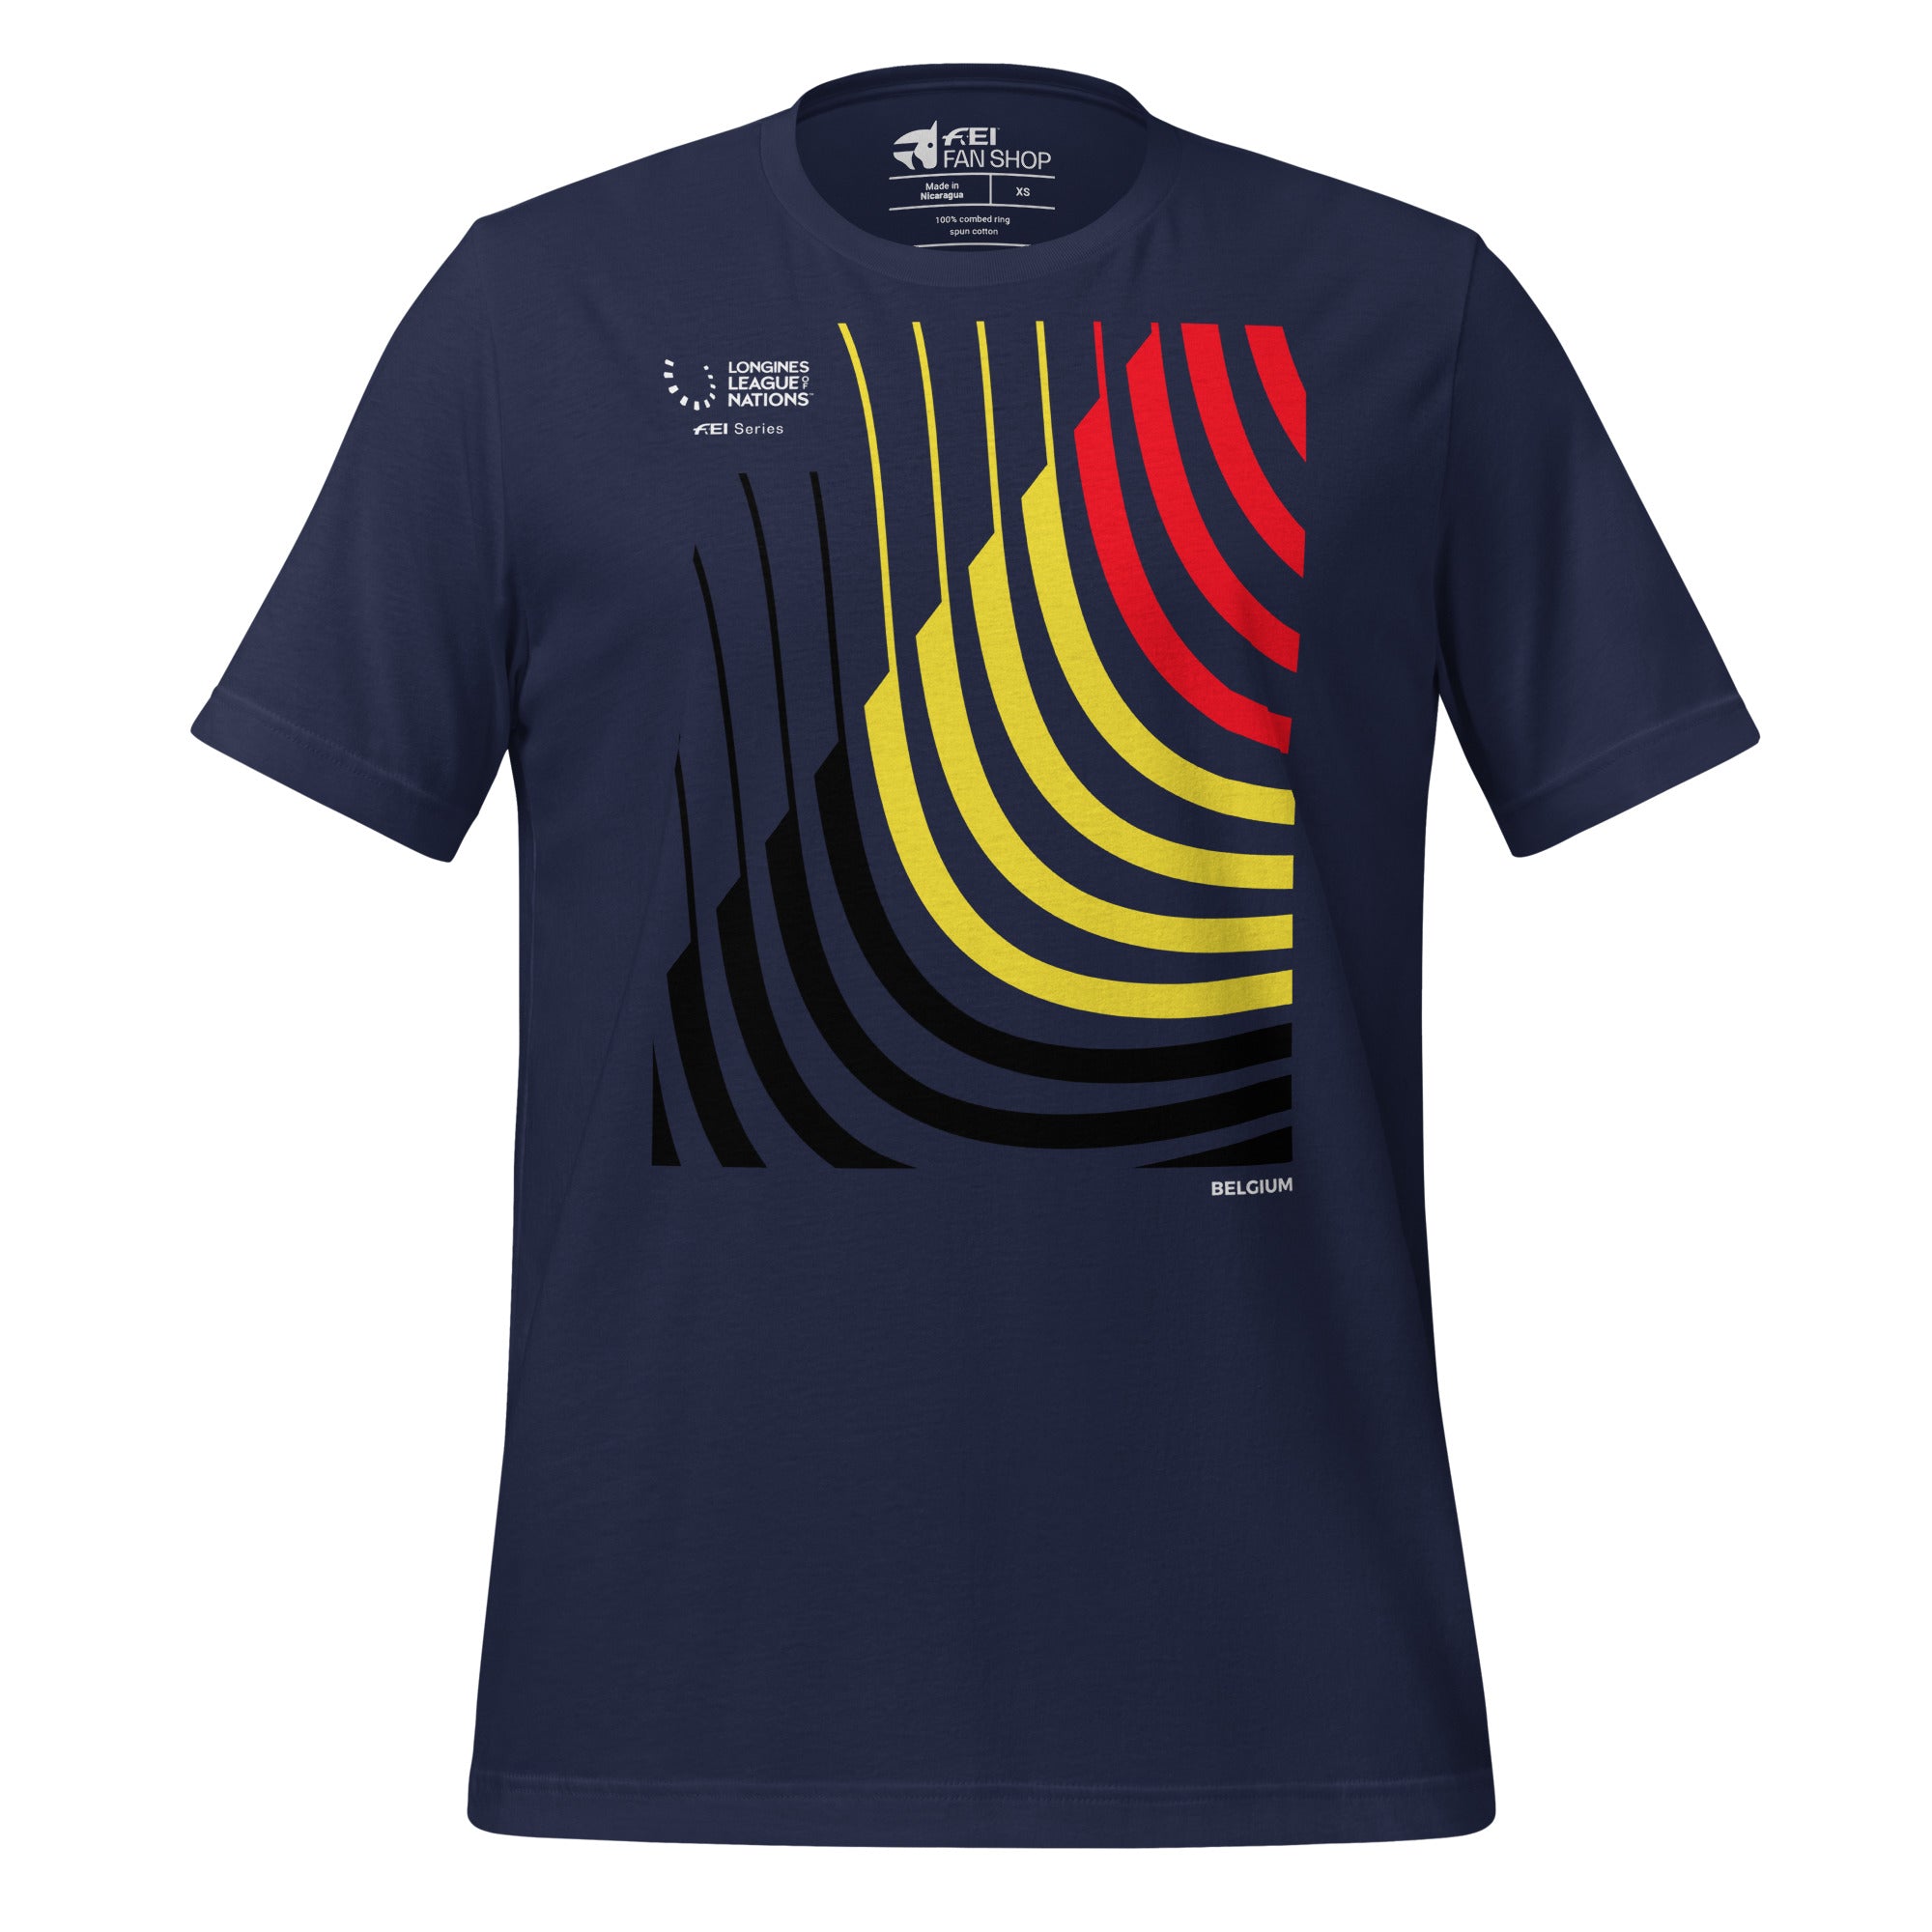 LLN Belgium T-shirt